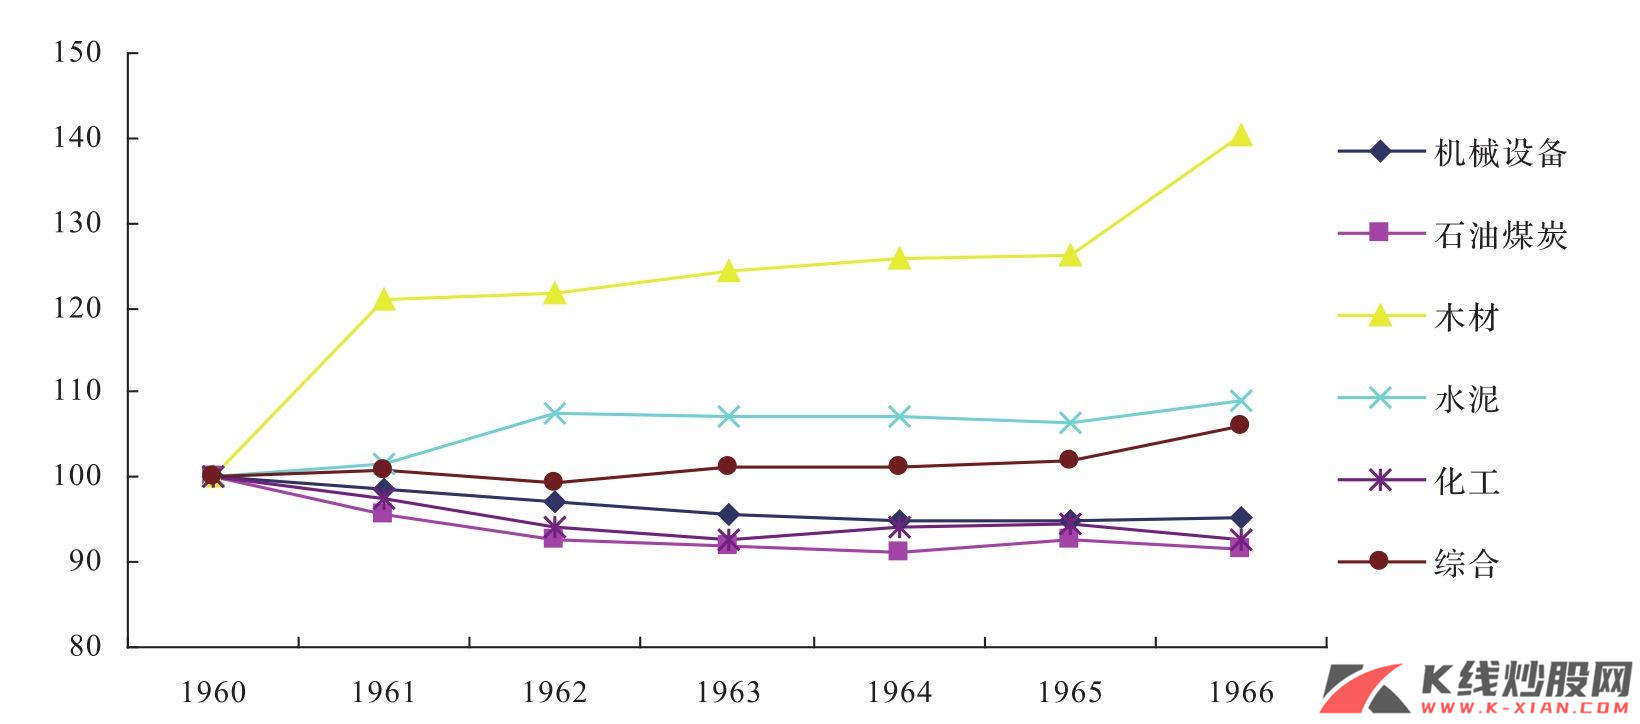 工业化期间日本的批发价格分类指数（1960—1966年）之一